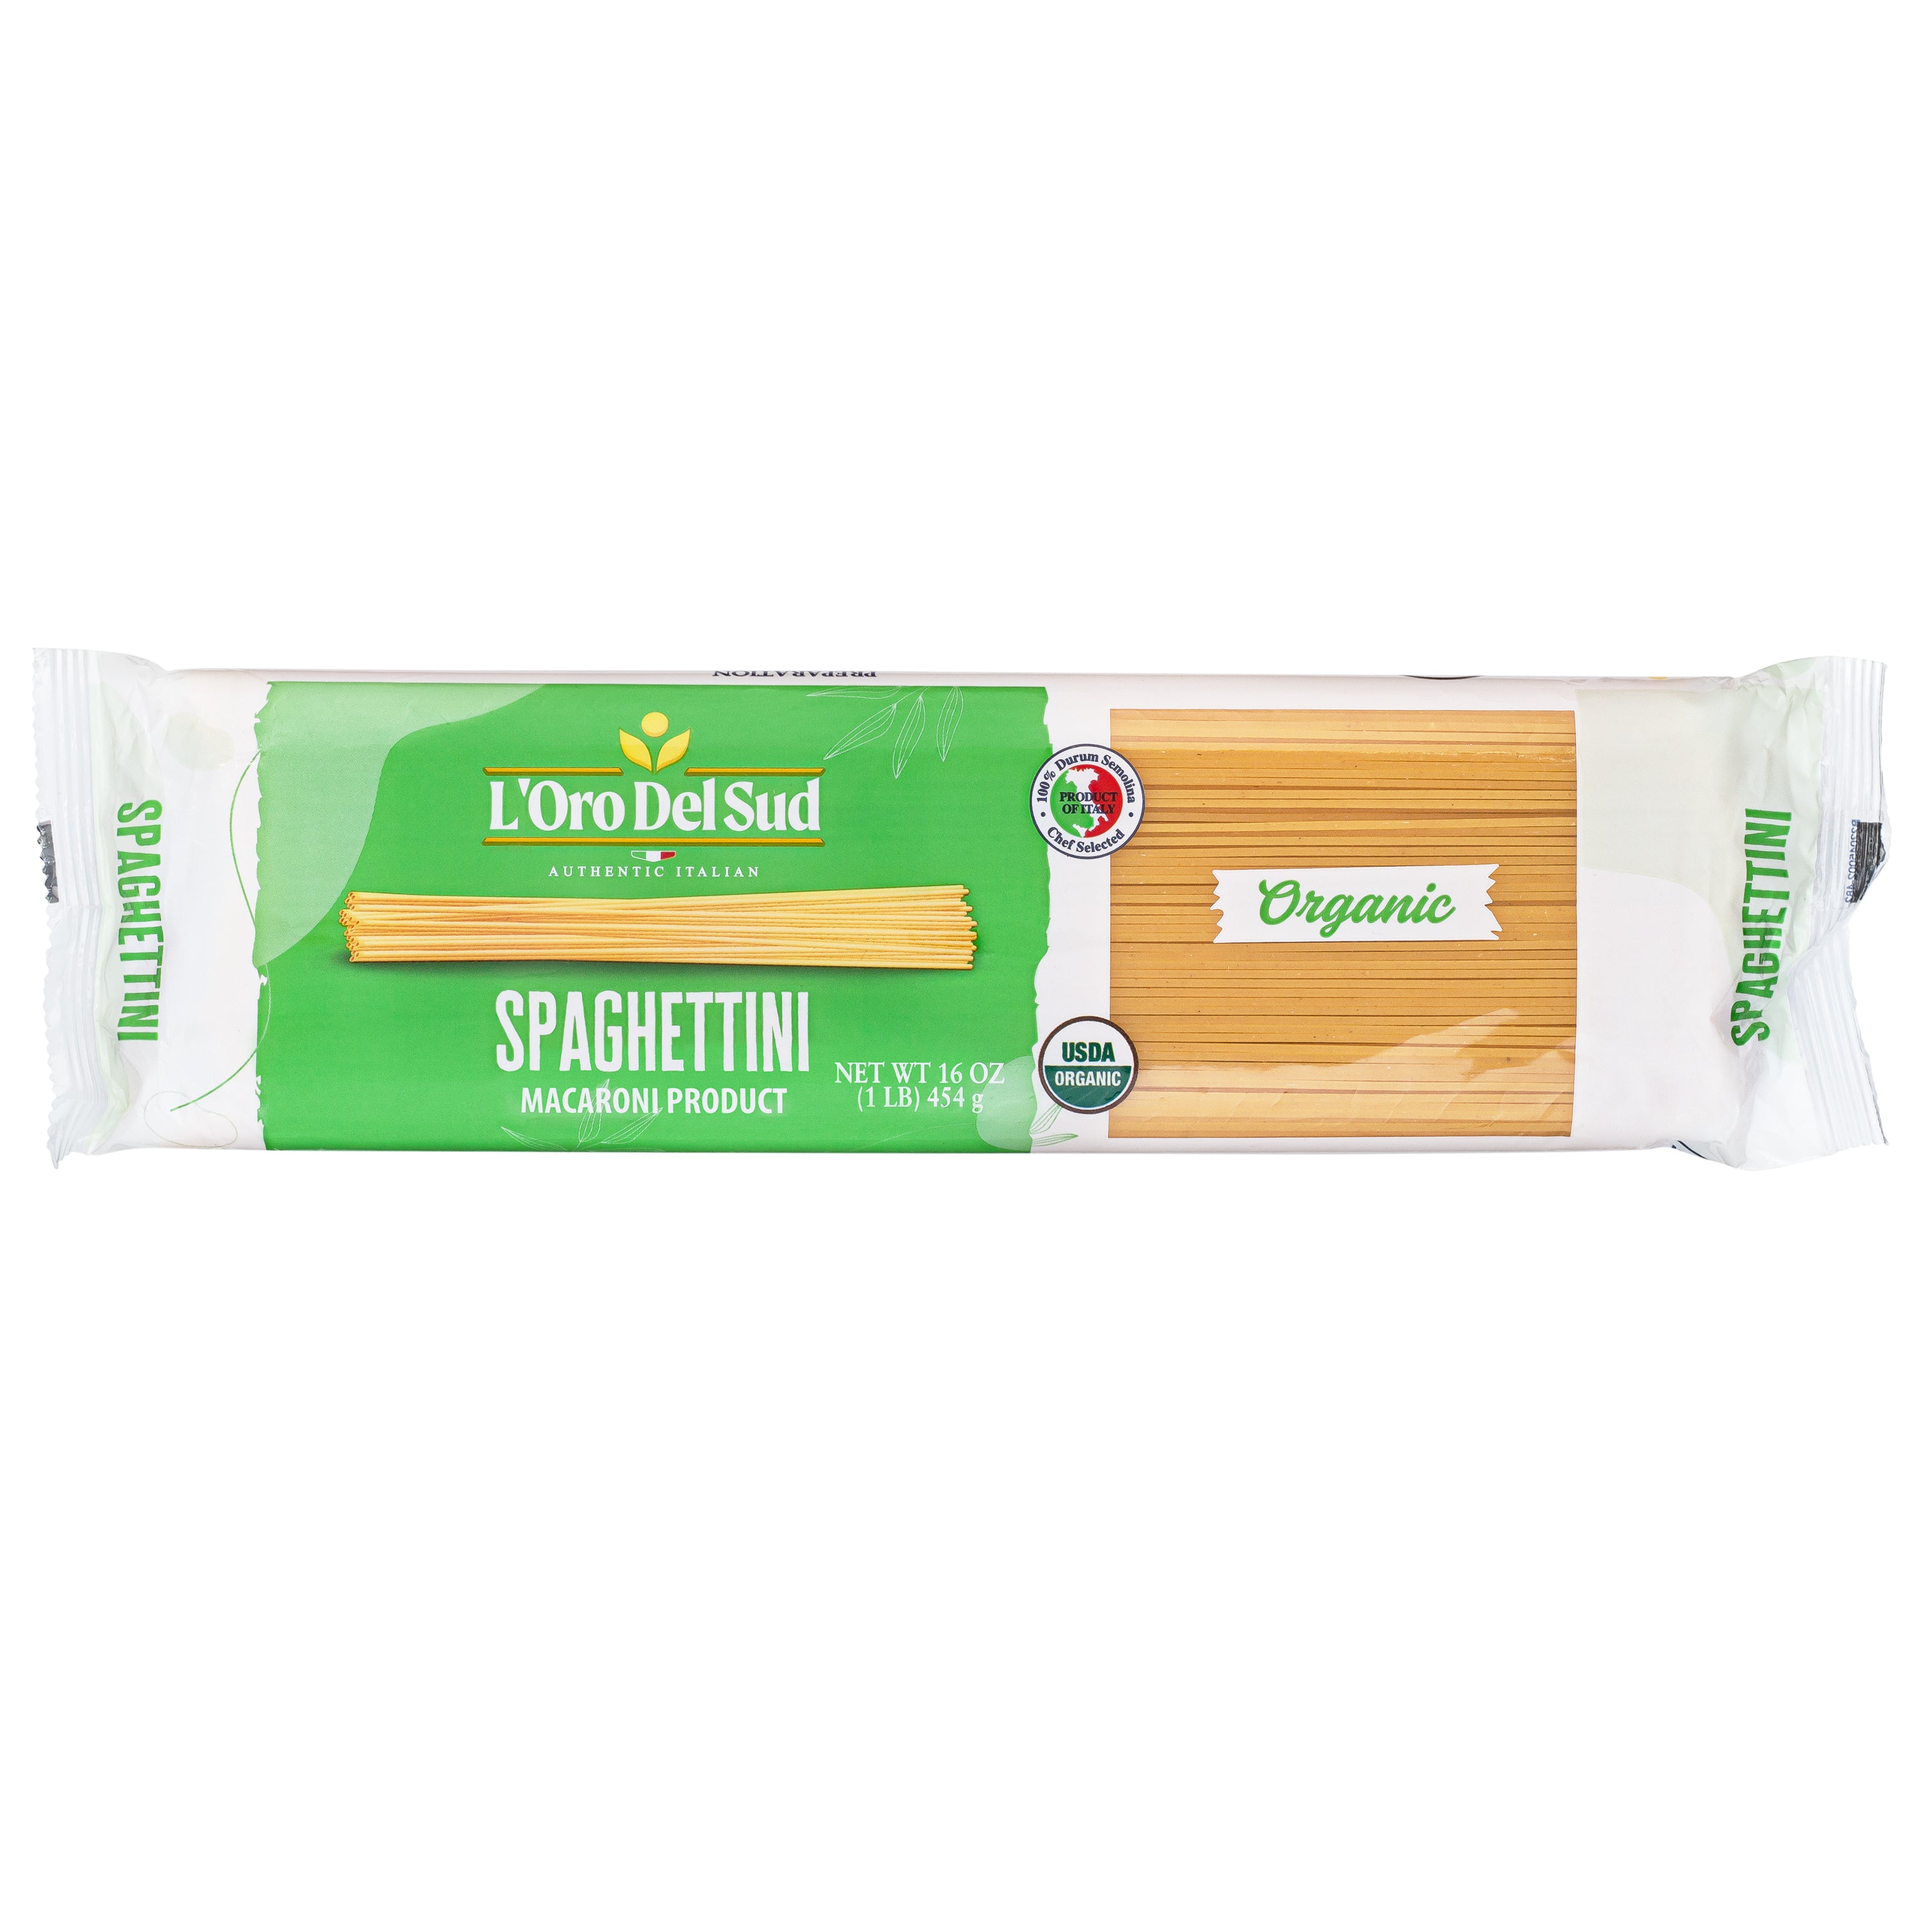 L'Oro Del Sud Spaghettini Pasta 1 lb. Bag (Organic)